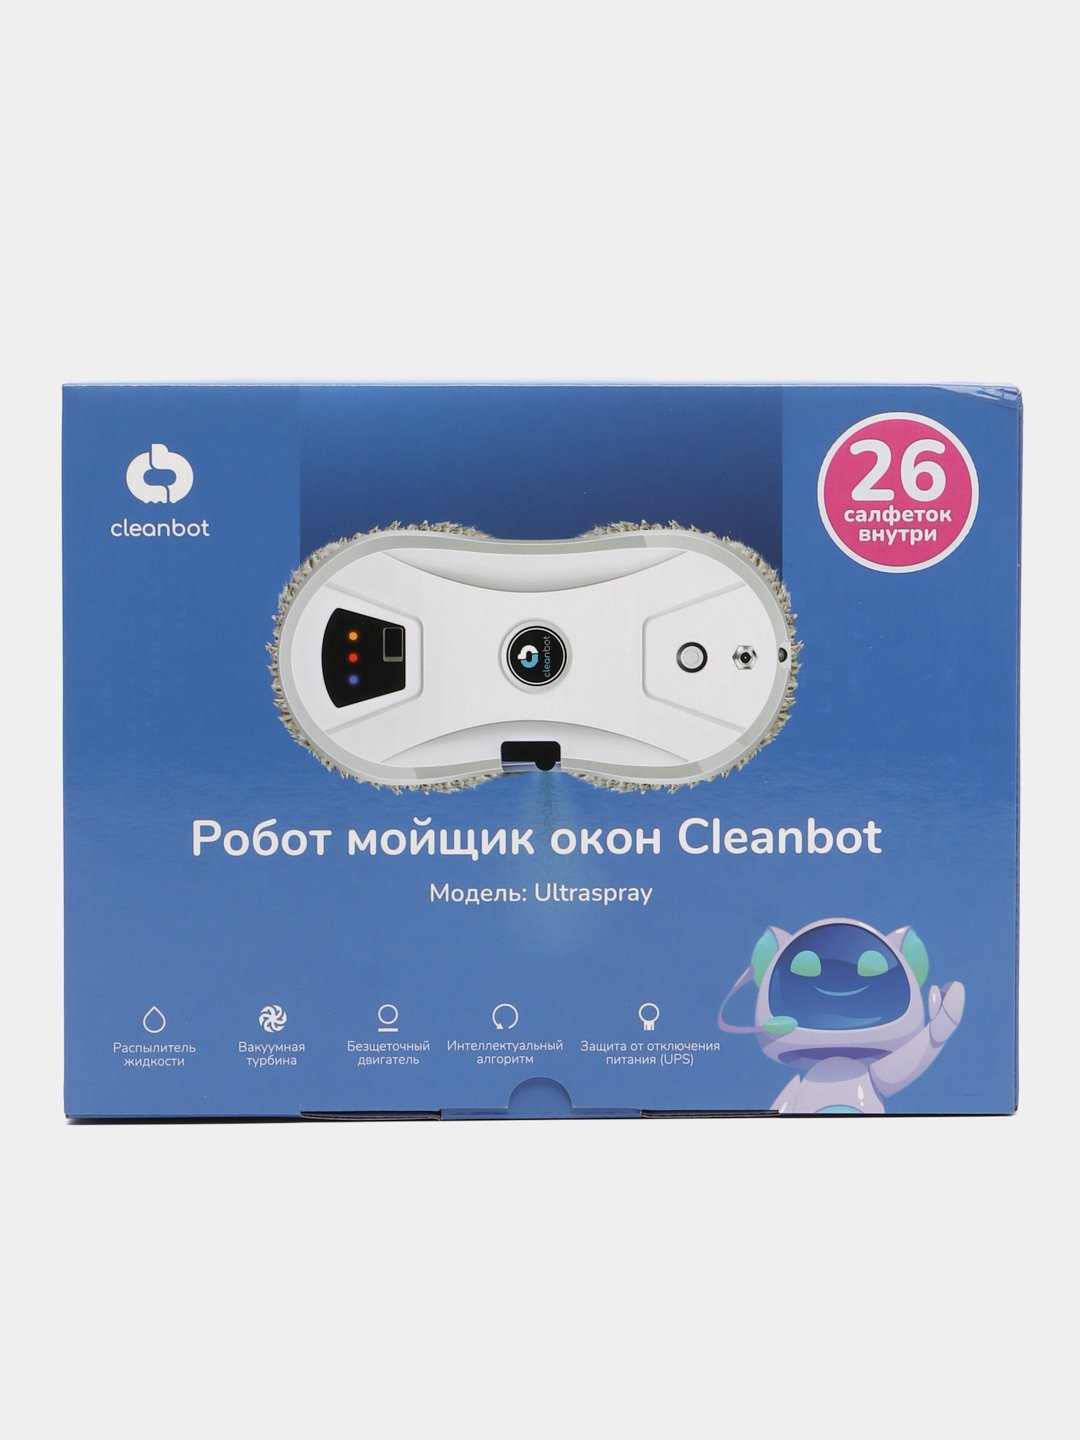 Робот для мойки окон Cleanbot ULTRASPRAY. Clean bot ULTRASPRAY робот мойщик окон. Инструкция робот мойщик окон Cleanbot ULTRASPRAY. Робот мойщик окон Cleanbot ULTRASPRAY С распылителем купить.